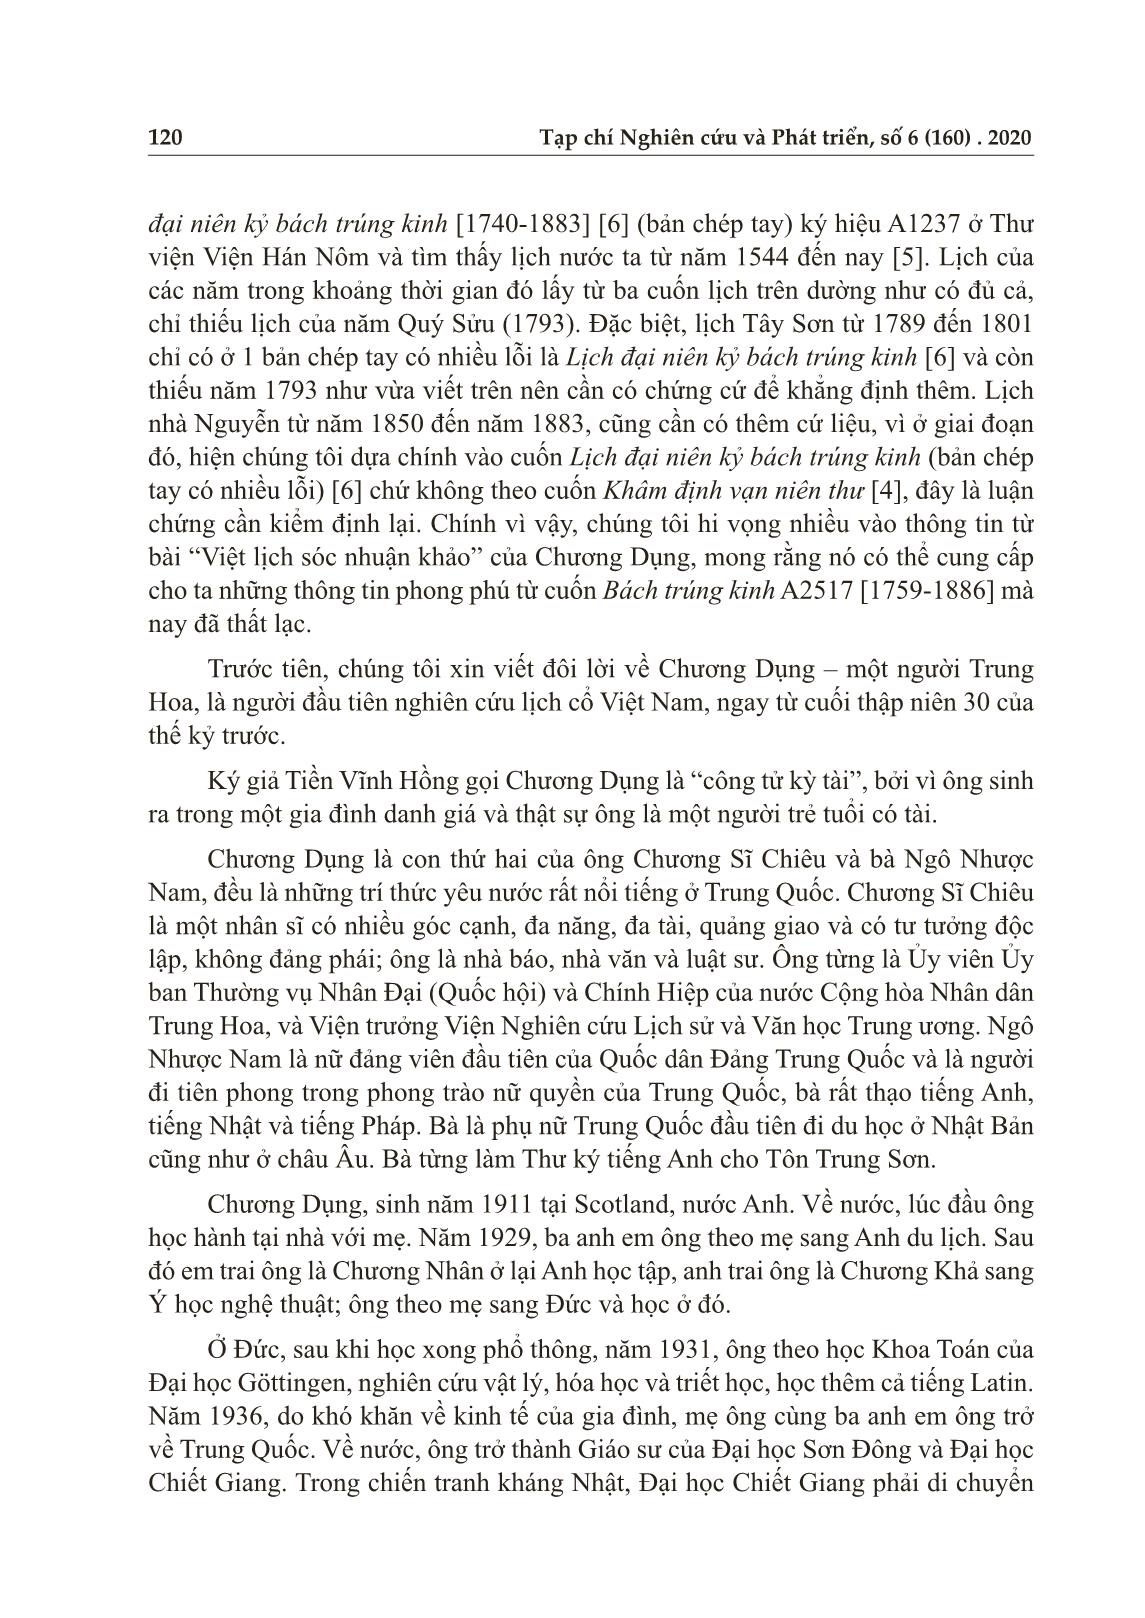 Đóng góp của Chương Dụng vào nghiên cứu lịch cổ Việt Nam trang 2